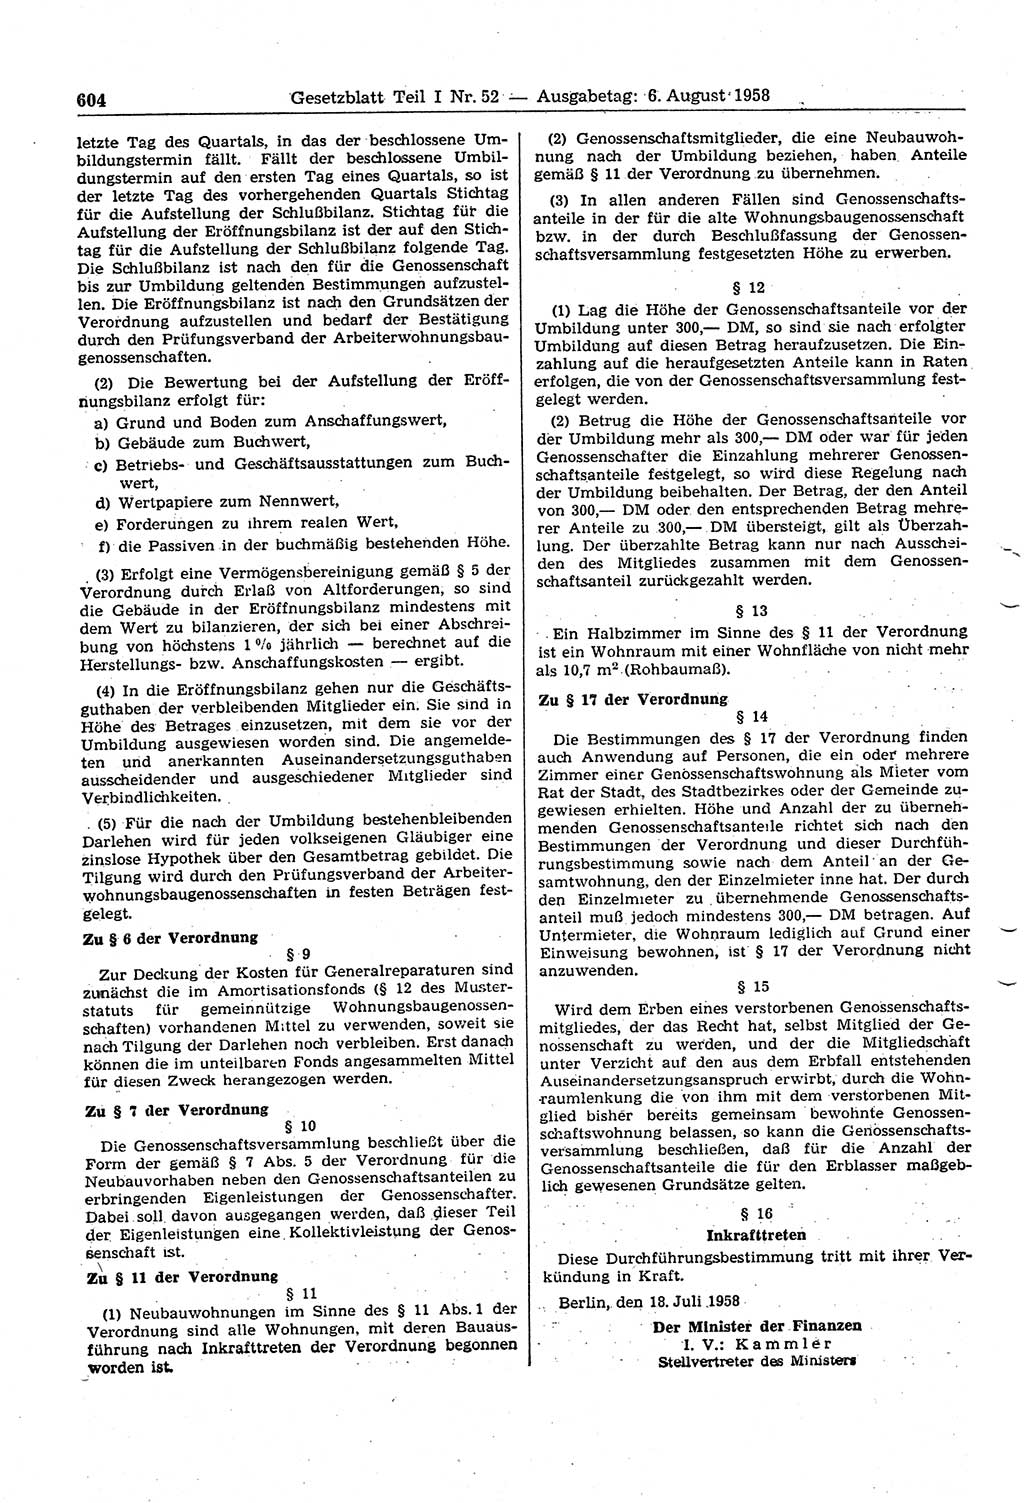 Gesetzblatt (GBl.) der Deutschen Demokratischen Republik (DDR) Teil Ⅰ 1958, Seite 604 (GBl. DDR Ⅰ 1958, S. 604)